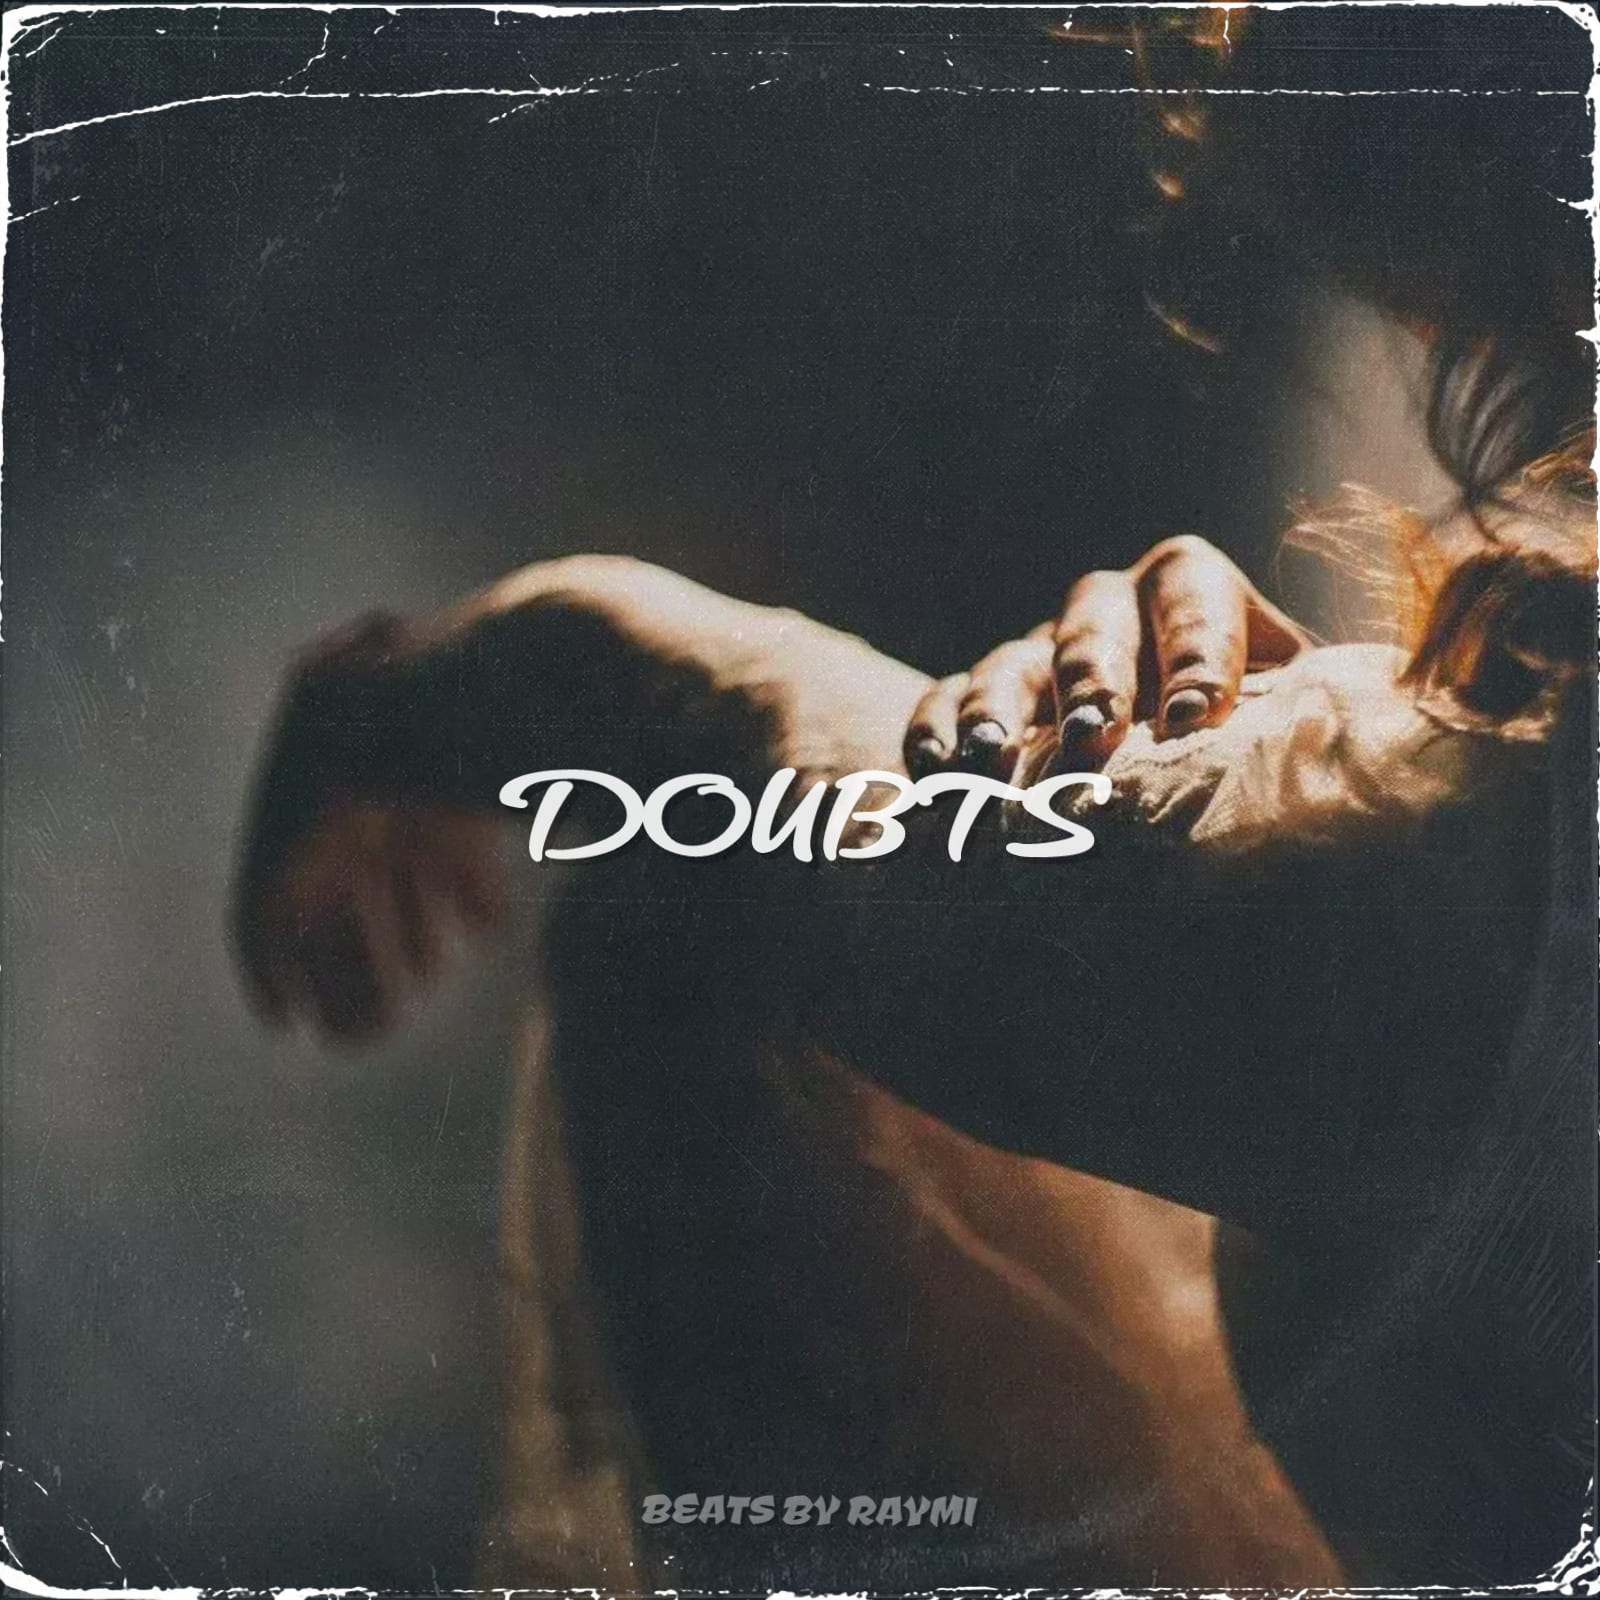 обложка бита, Raymi, музыка, cover, Doubts (грустный, атмосферный бит)